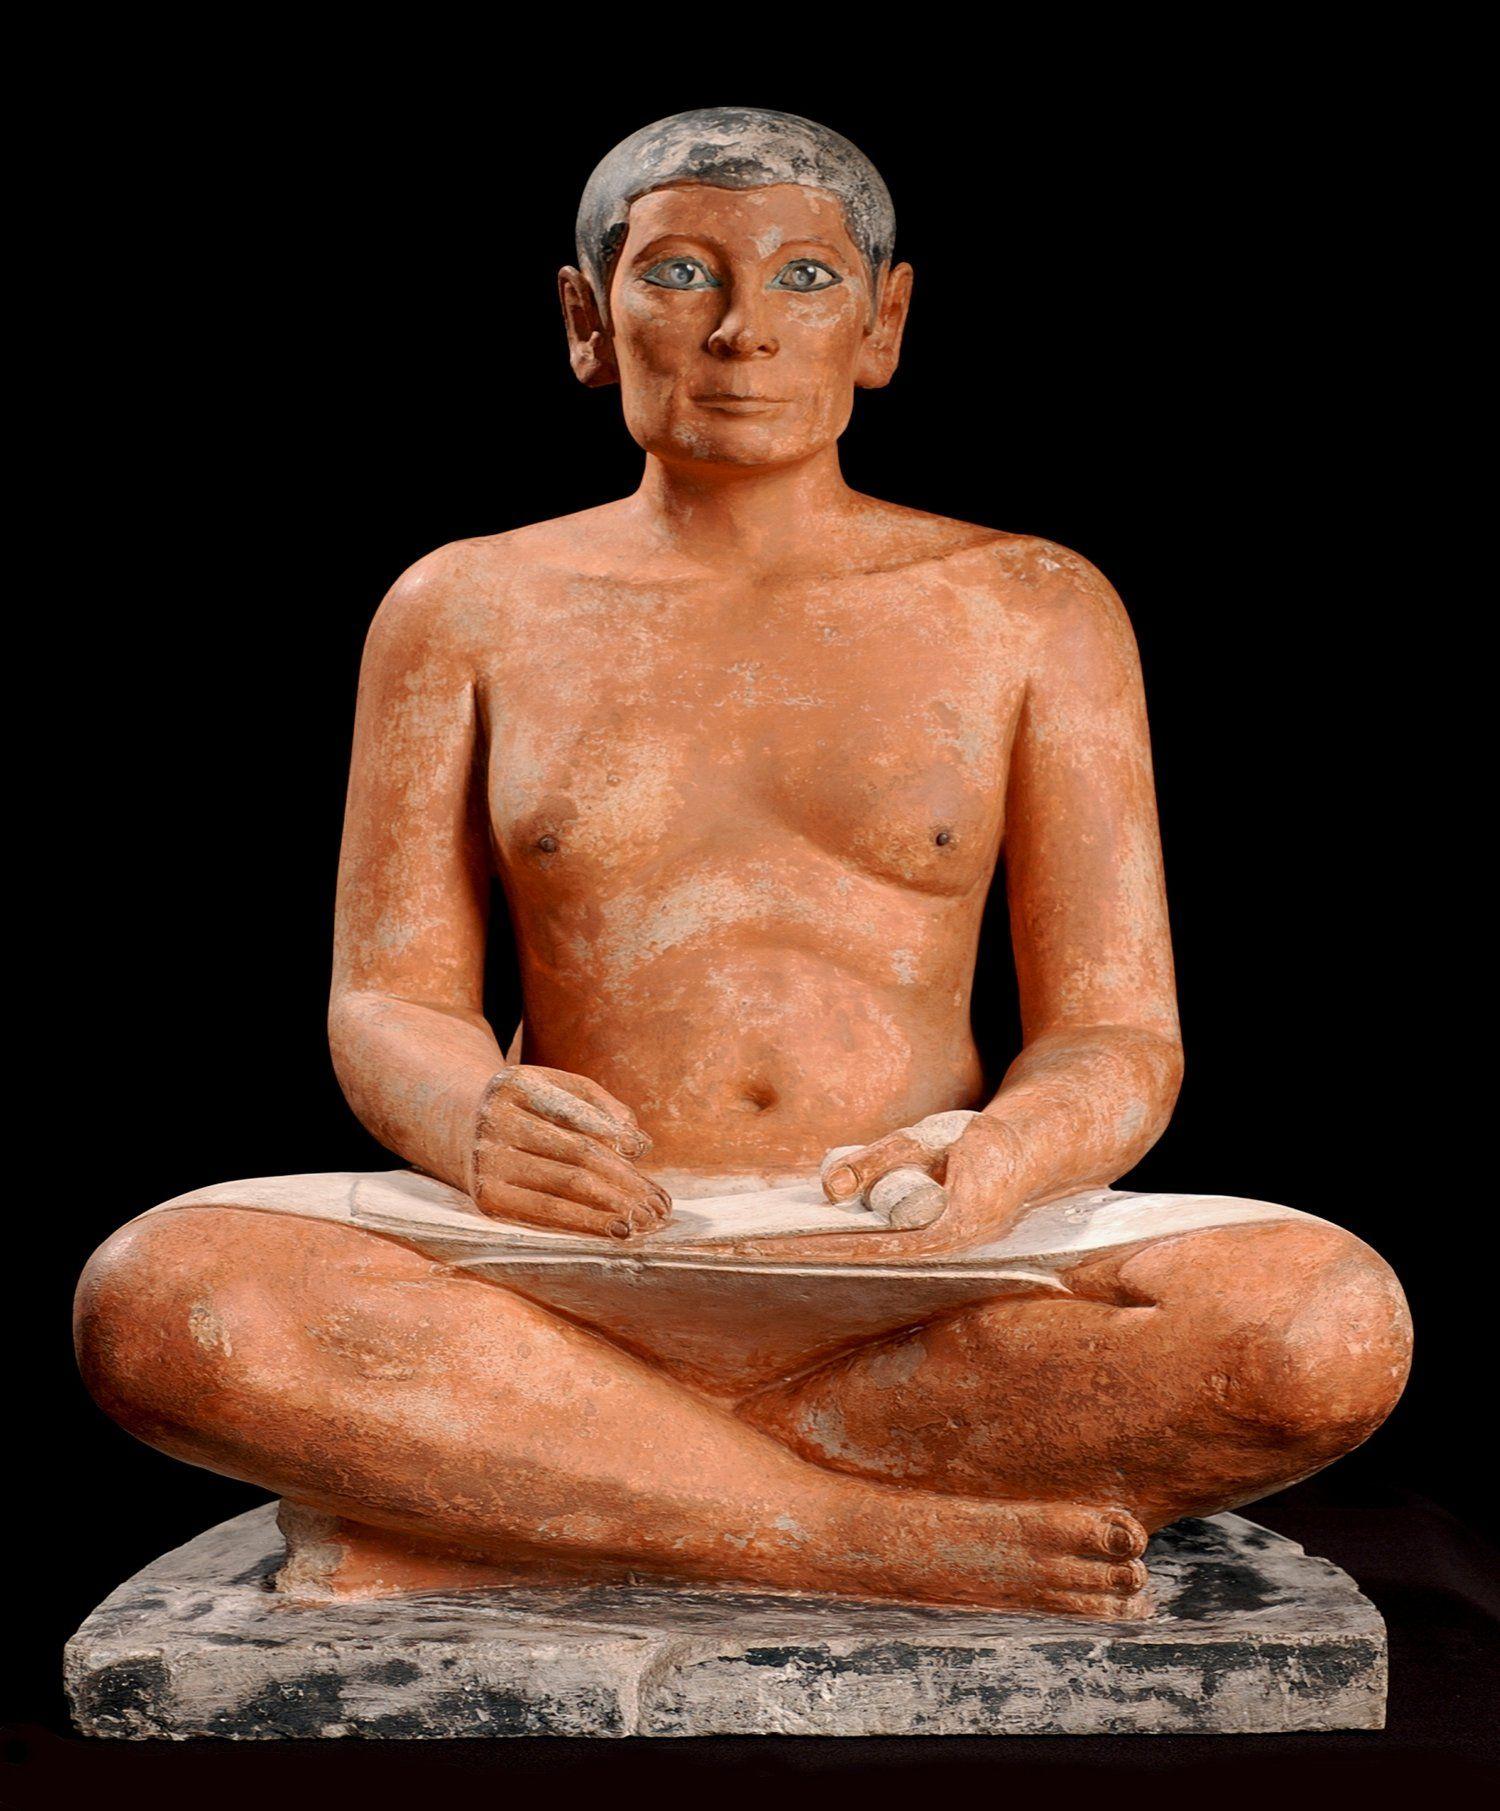 تمثال الكاتب المصري بمتحف اللوفر